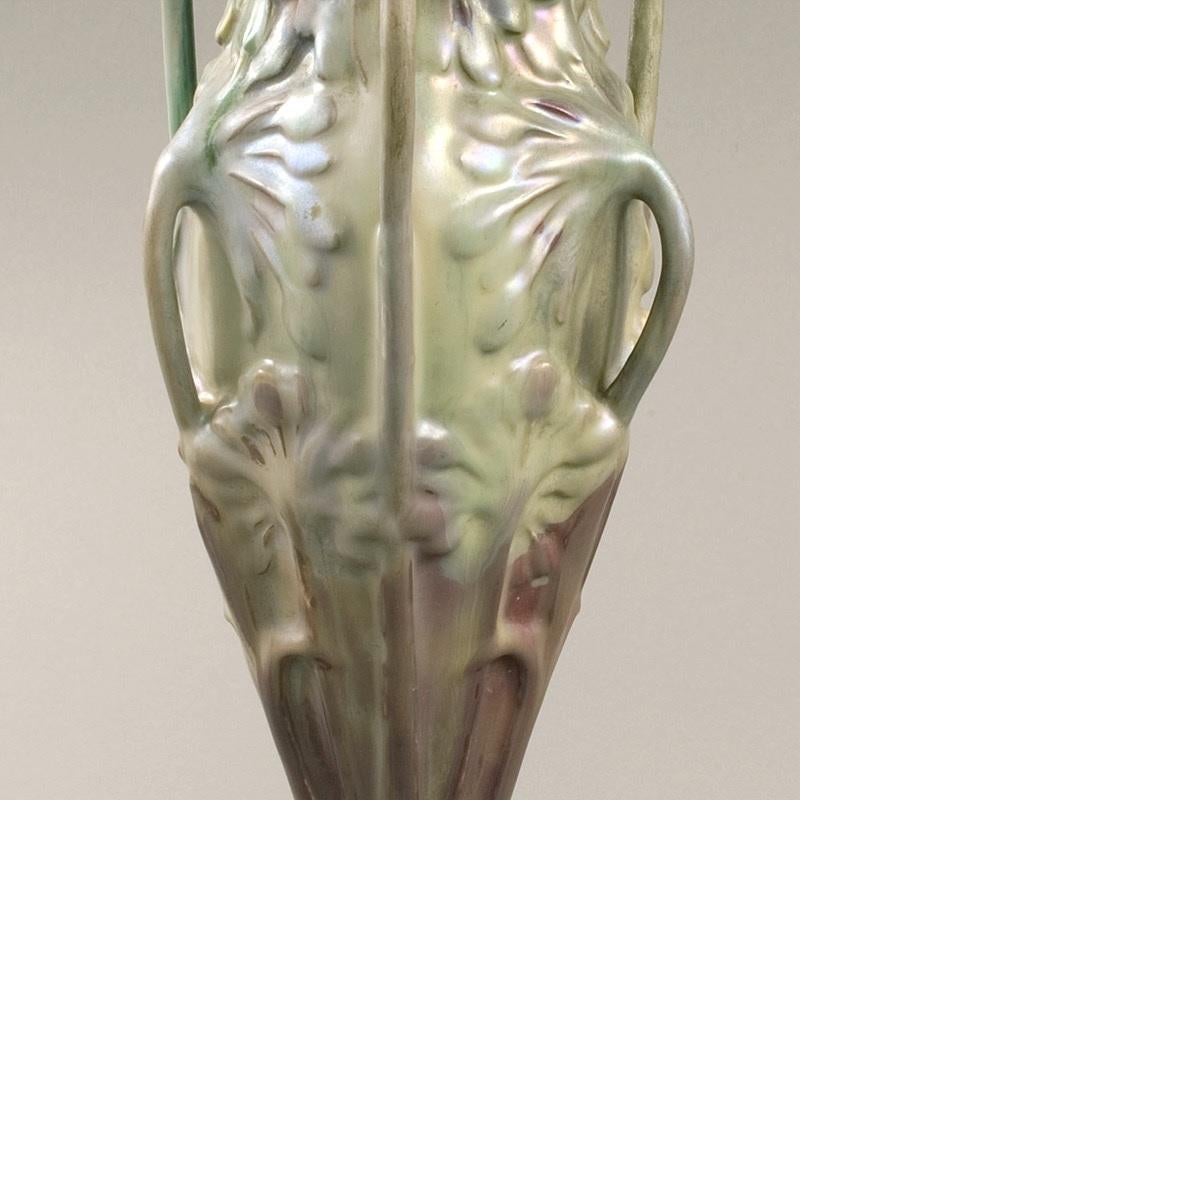 Bussière French Art Nouveau “Ombellifère” Ceramic Vase 1